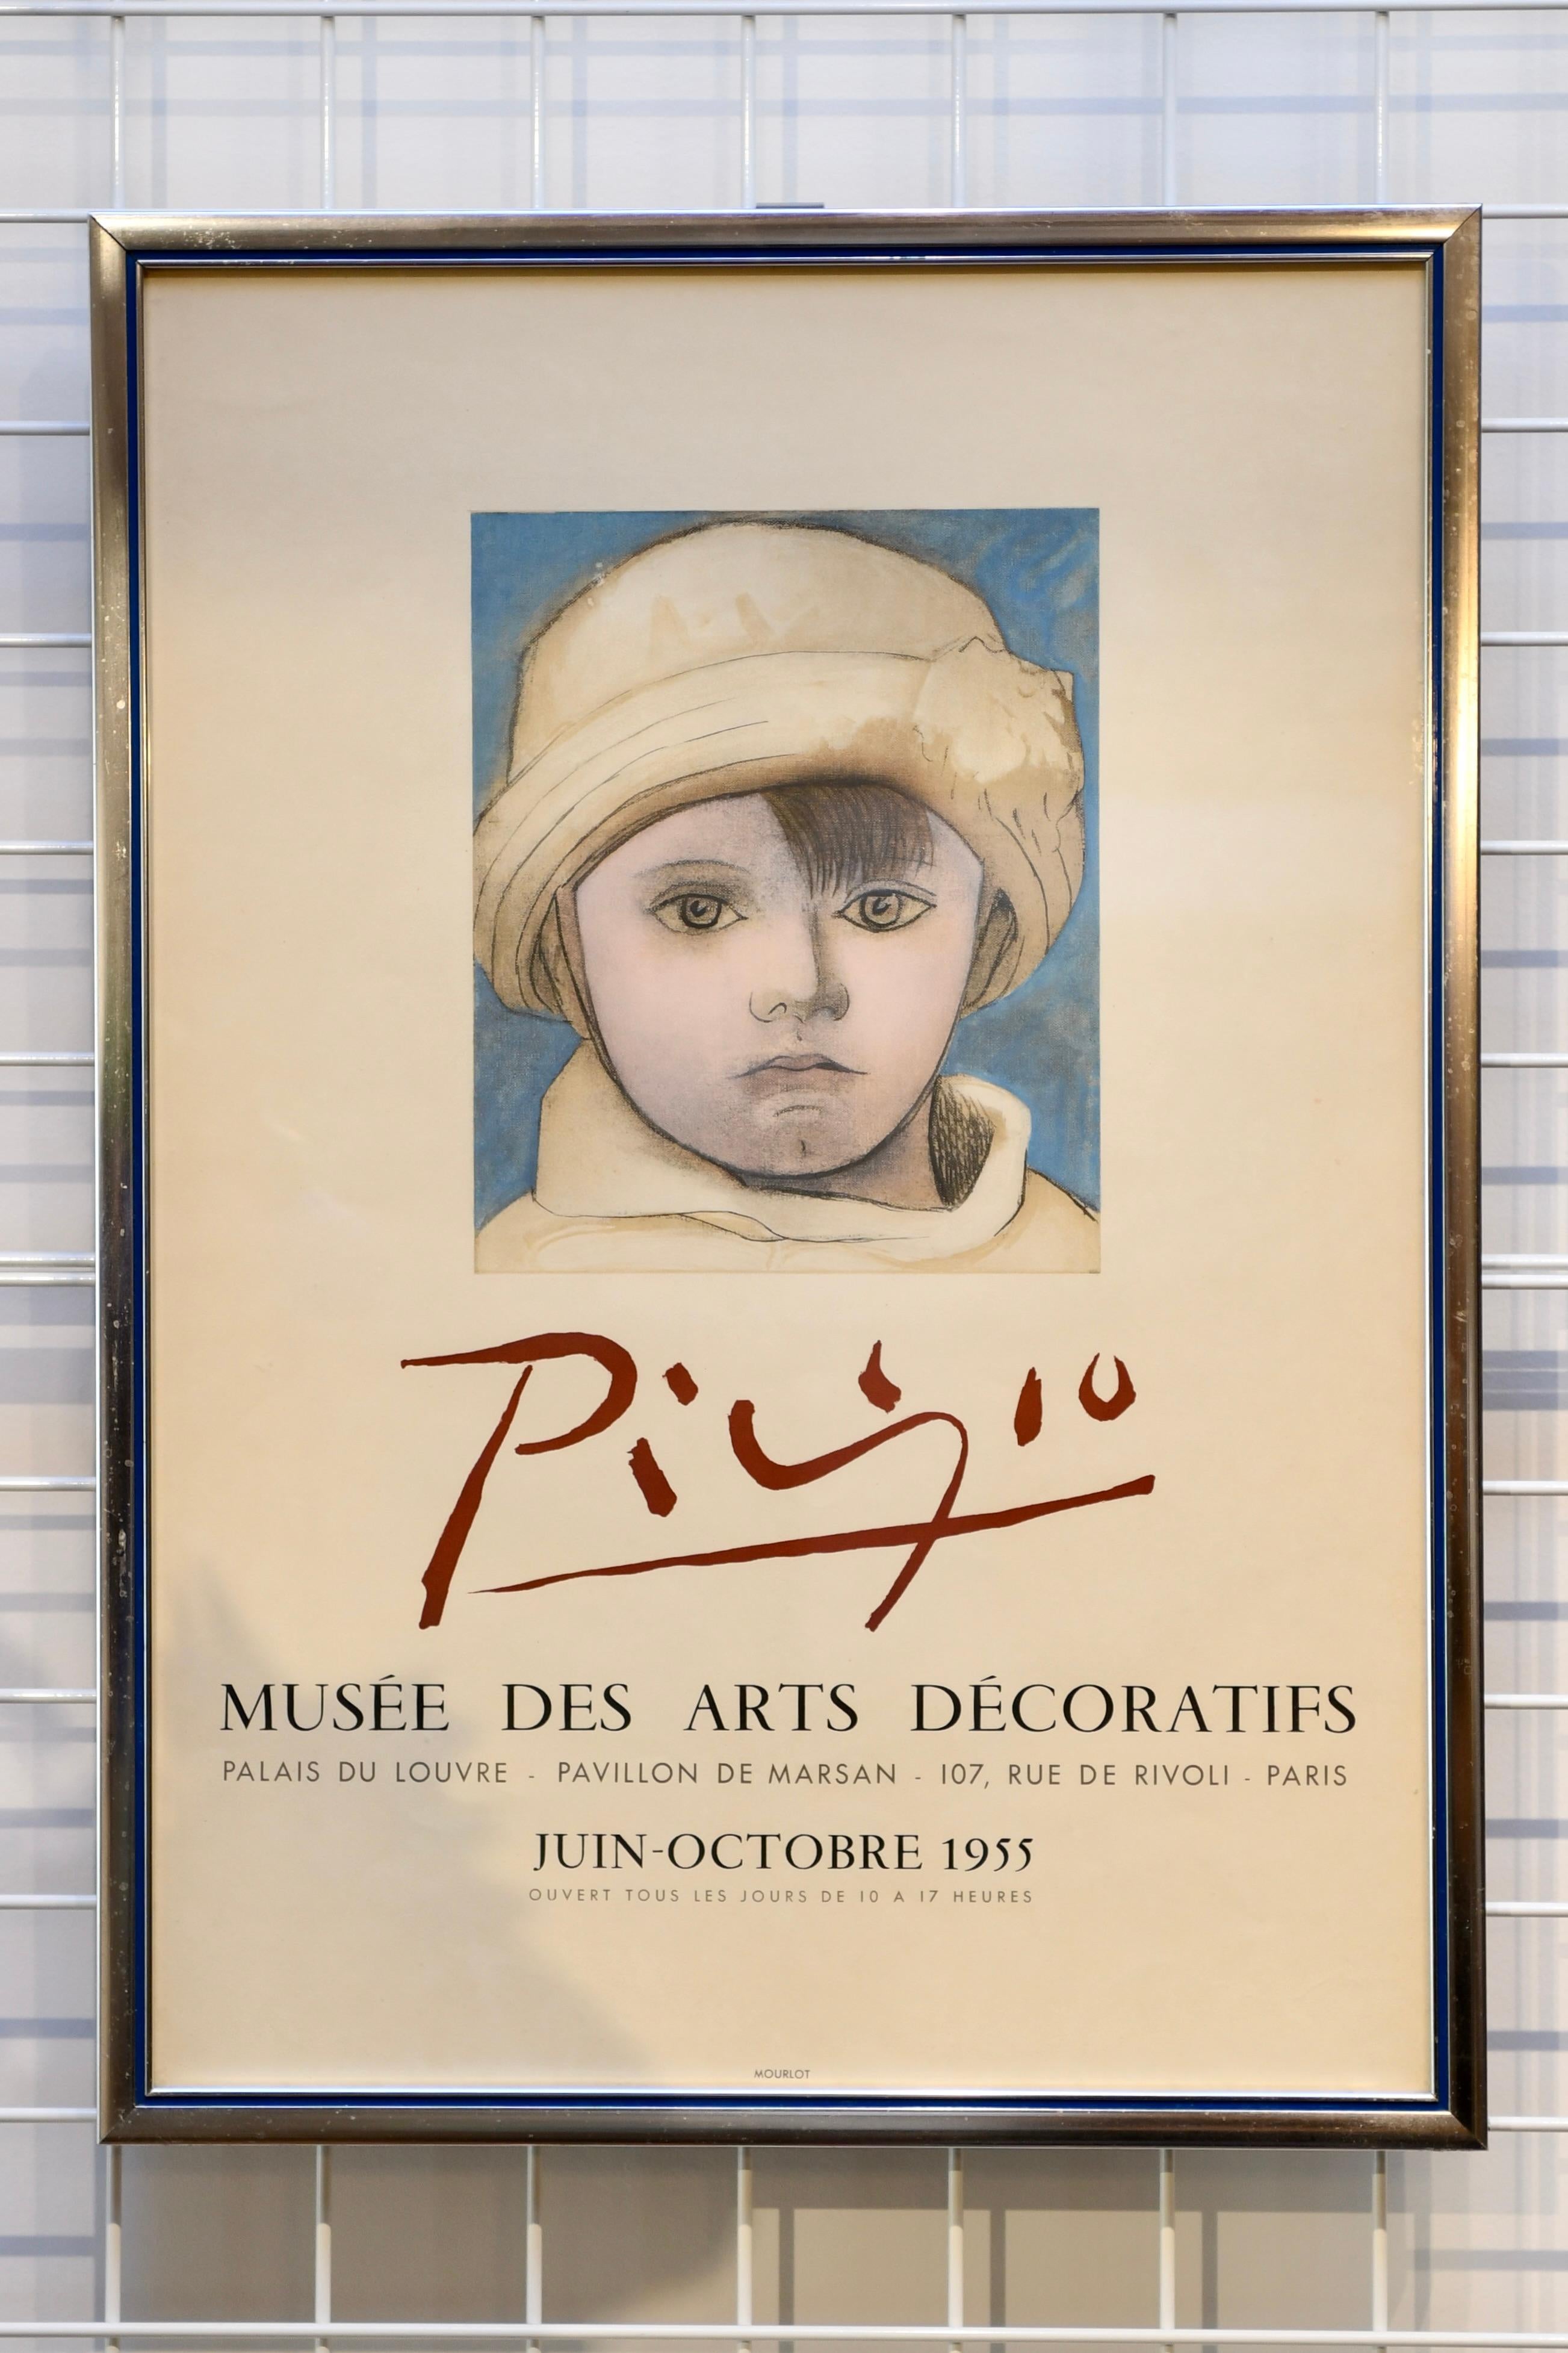 1955 Ausstellungsplakat des Musee des Arts Decoratifs Picasso. Gedruckt von Mourlot. Abmessungen: 27,25 